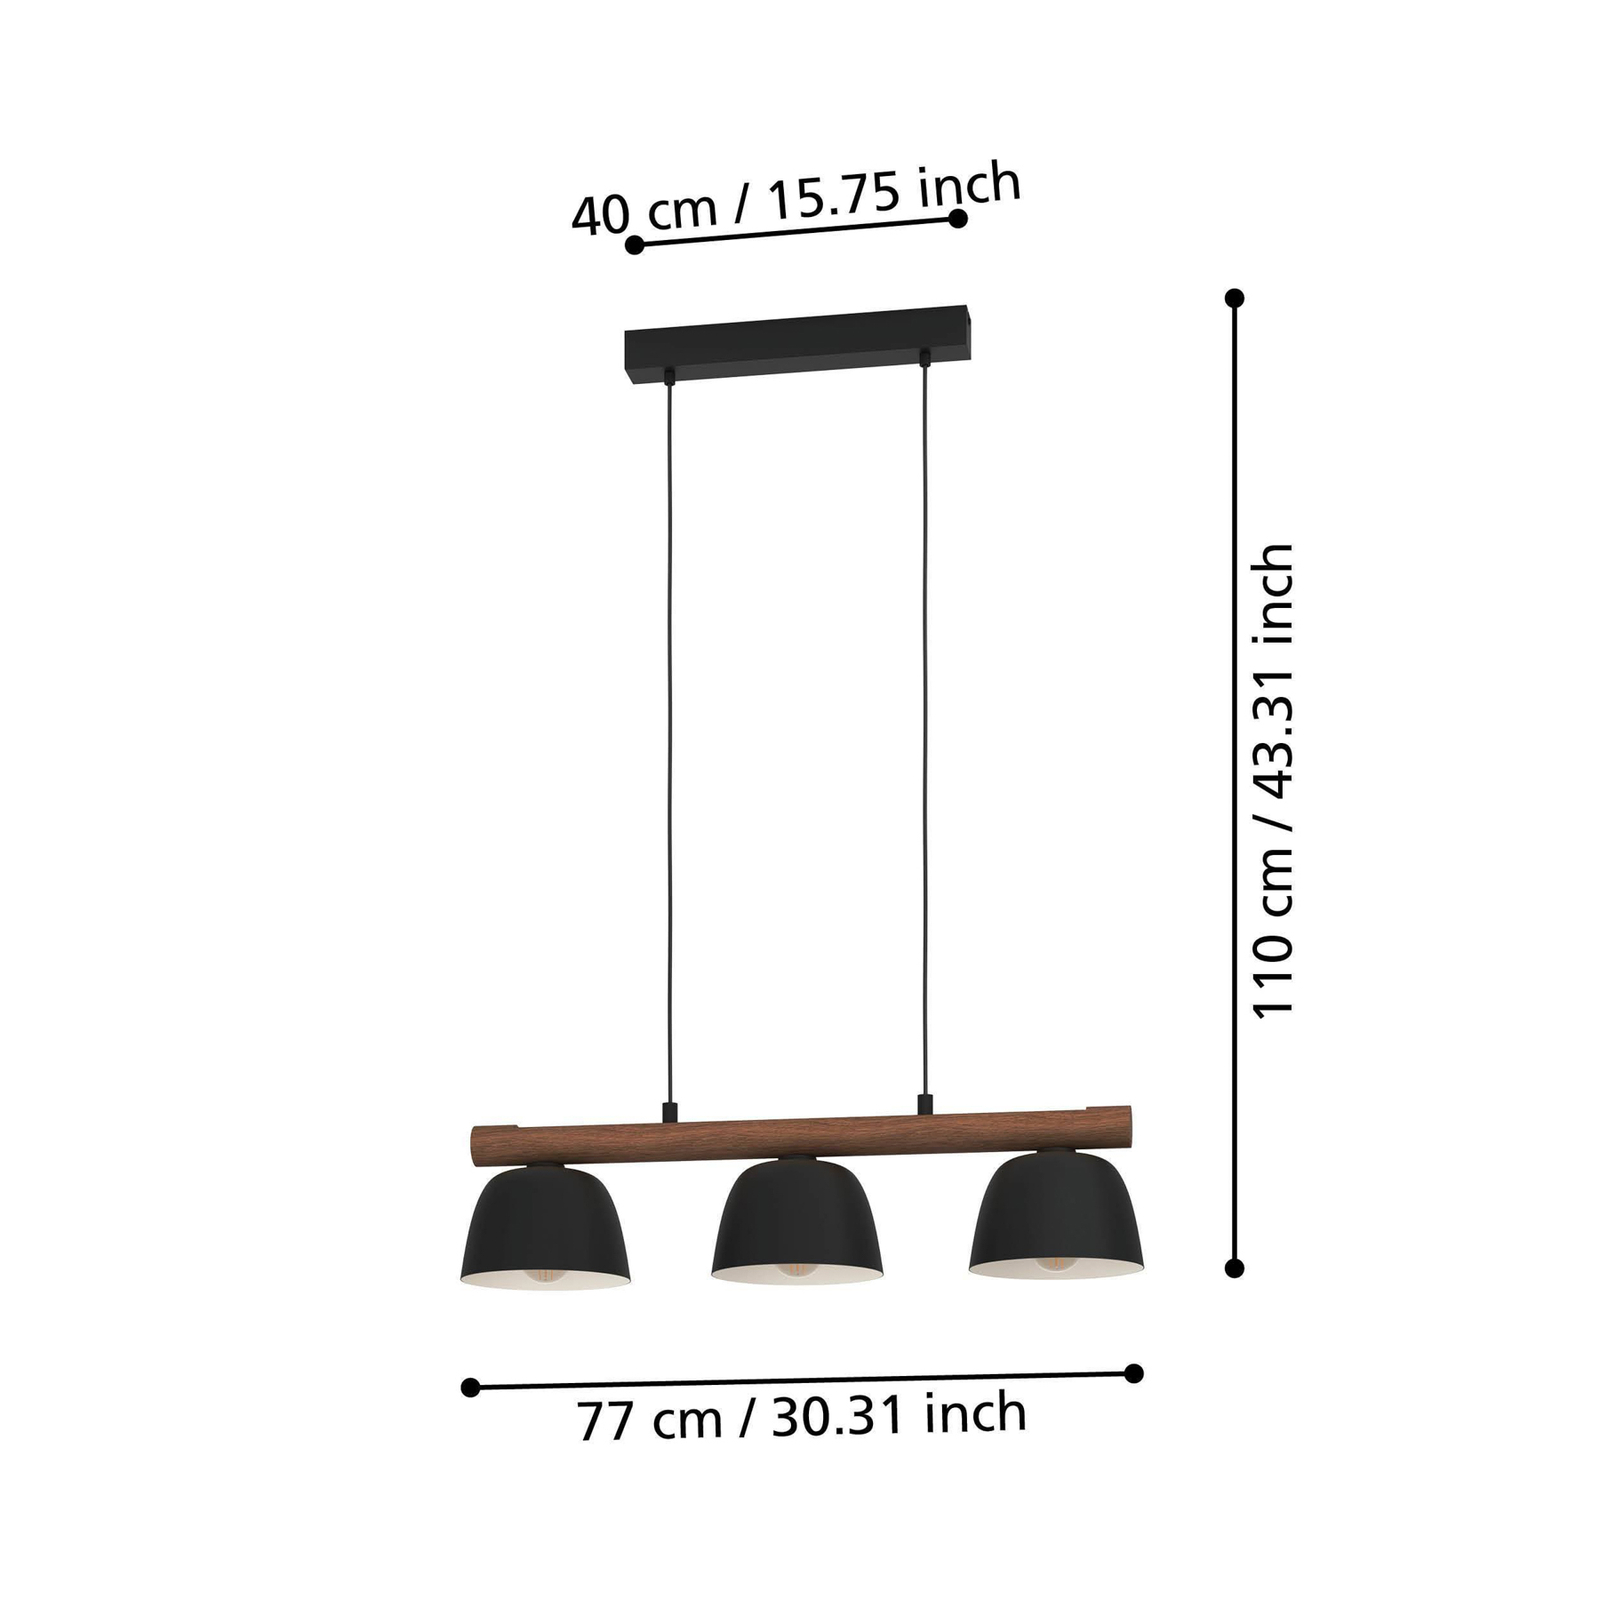 Závesné svietidlo Sherburn, dĺžka 77 cm, čierna/hnedá farba, 3 svetlá.